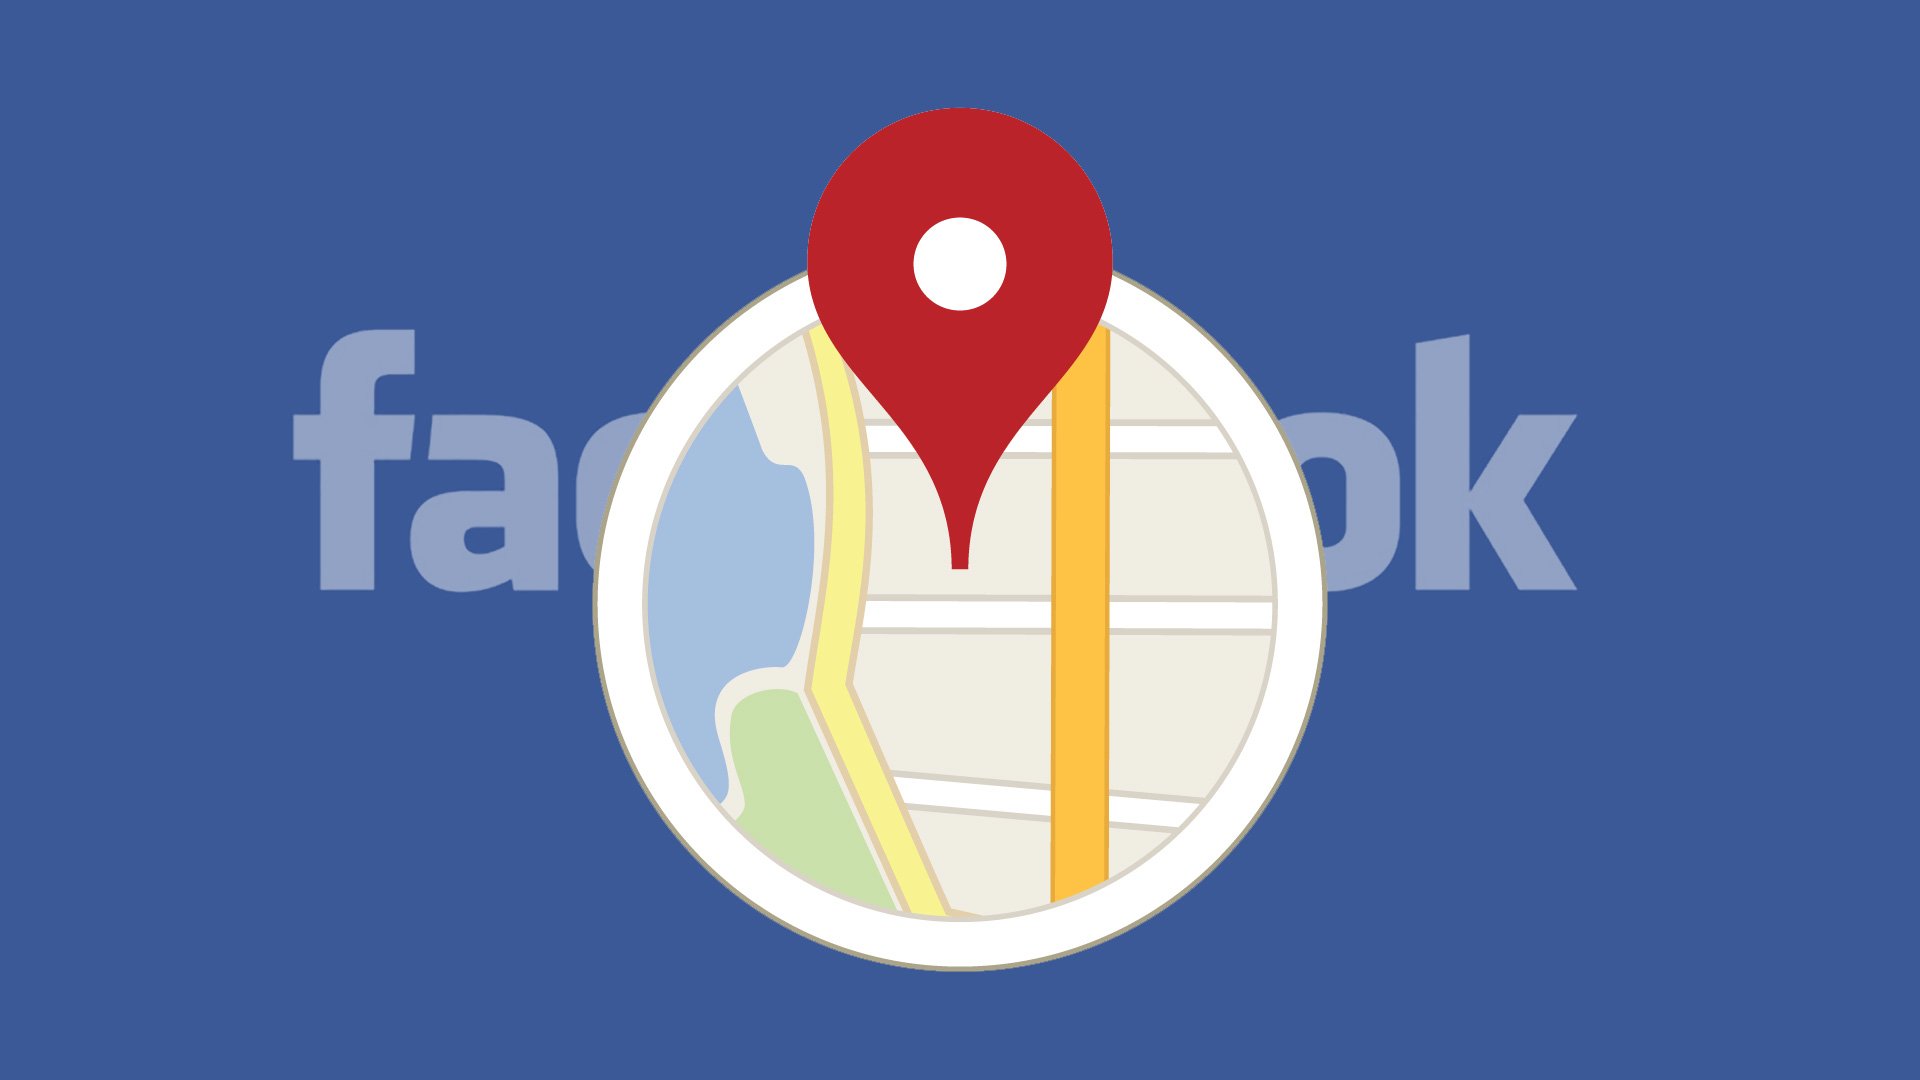 کمک فیسبوک به تبیغات کسب و کارهای محلی ( شیوه های بازاریابی با صفحه تجاری فیسبوک )